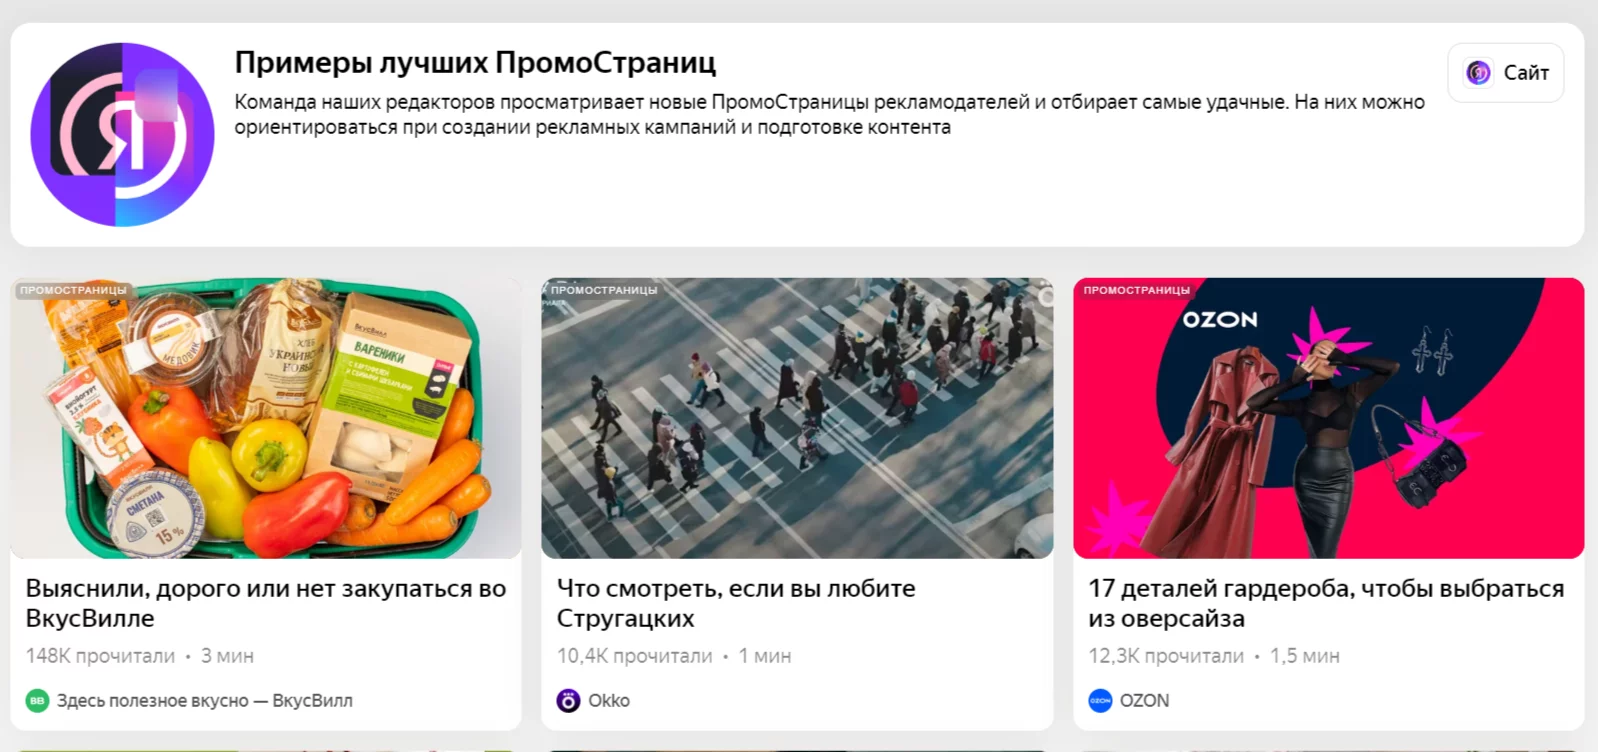 Яндекс делится примерами лучших промо-материалов